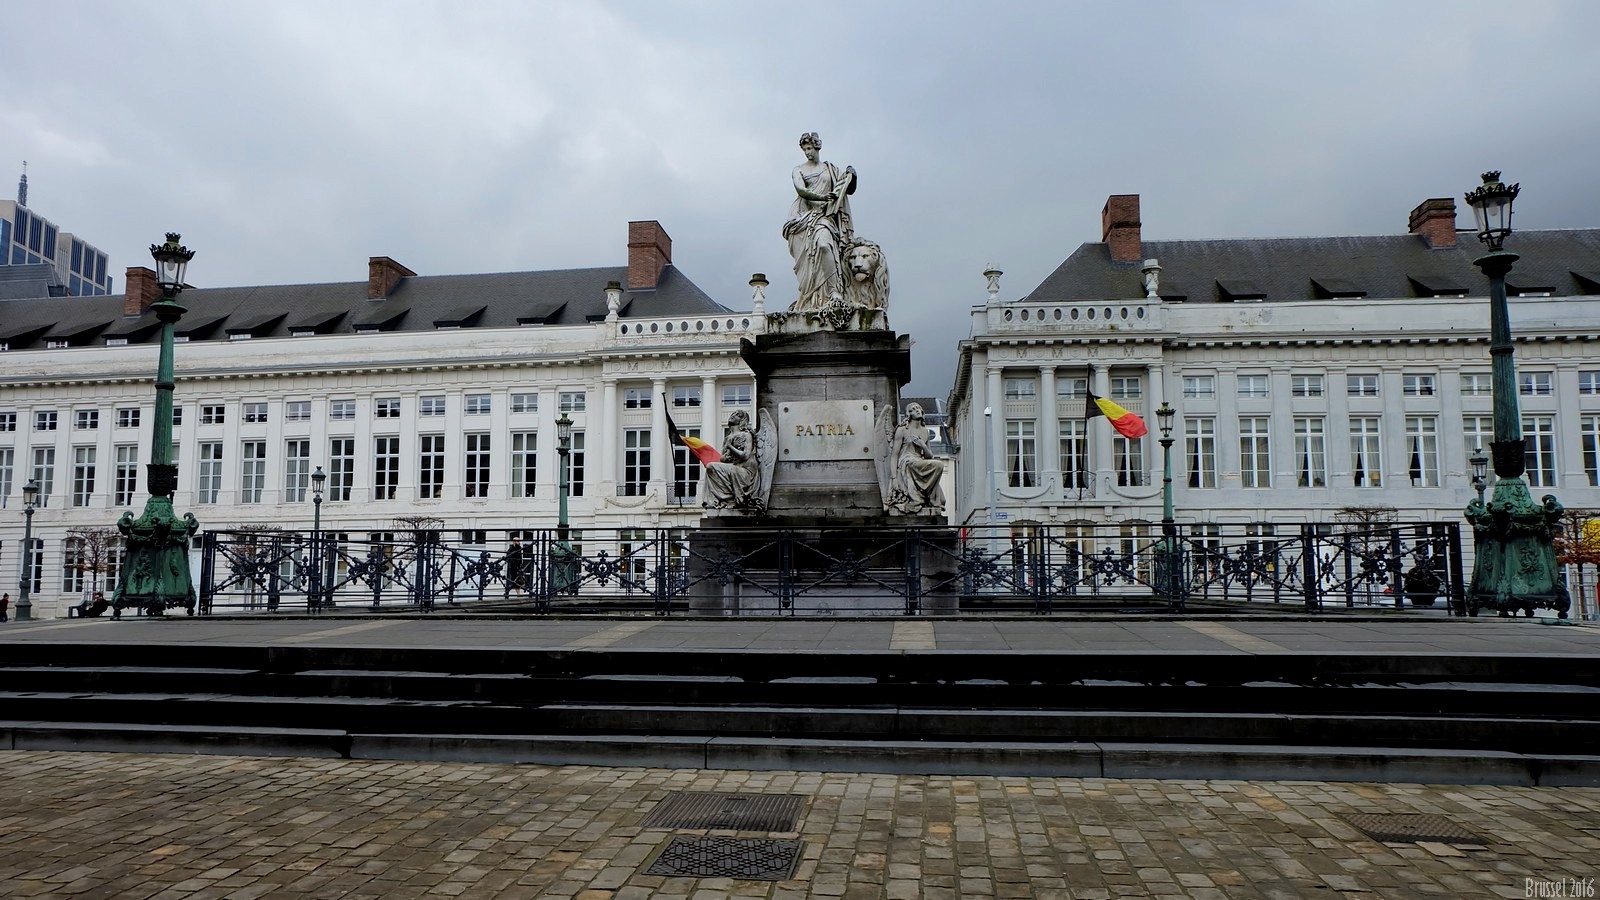 Brussel, Belgium